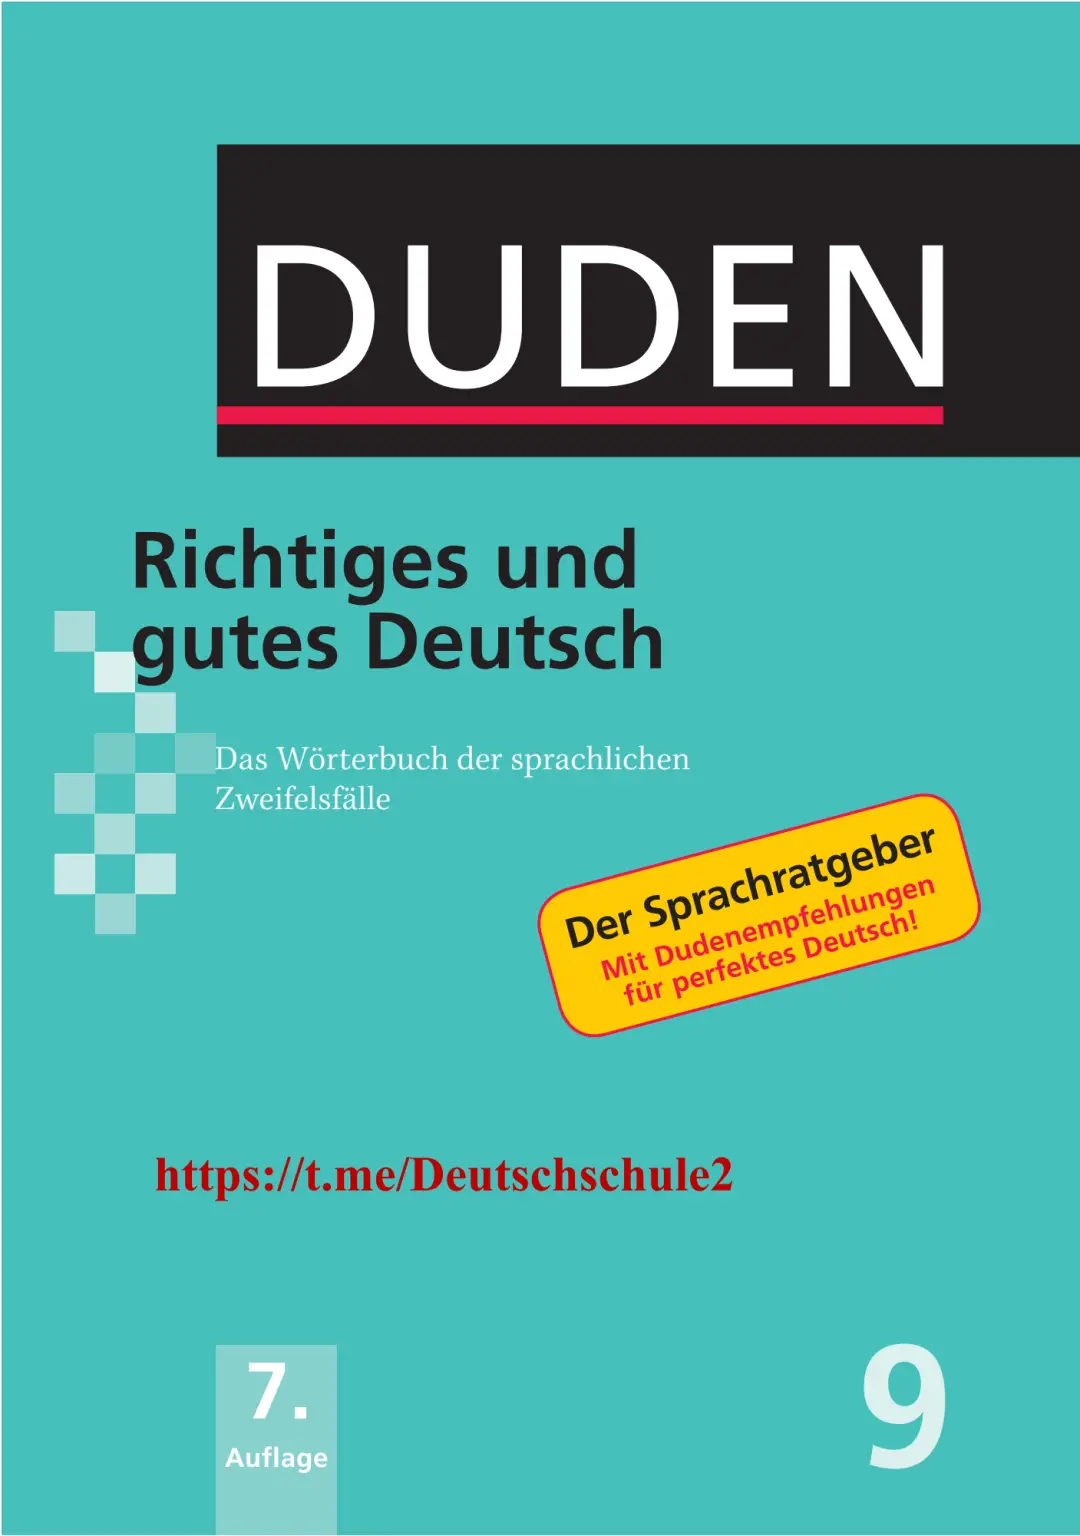 Rich Results on Google's SERP when searching for 'Duden-Richtiges-Und-Gutes-Deutsch-Das-Worterbuch-Der-Sprachlichen''